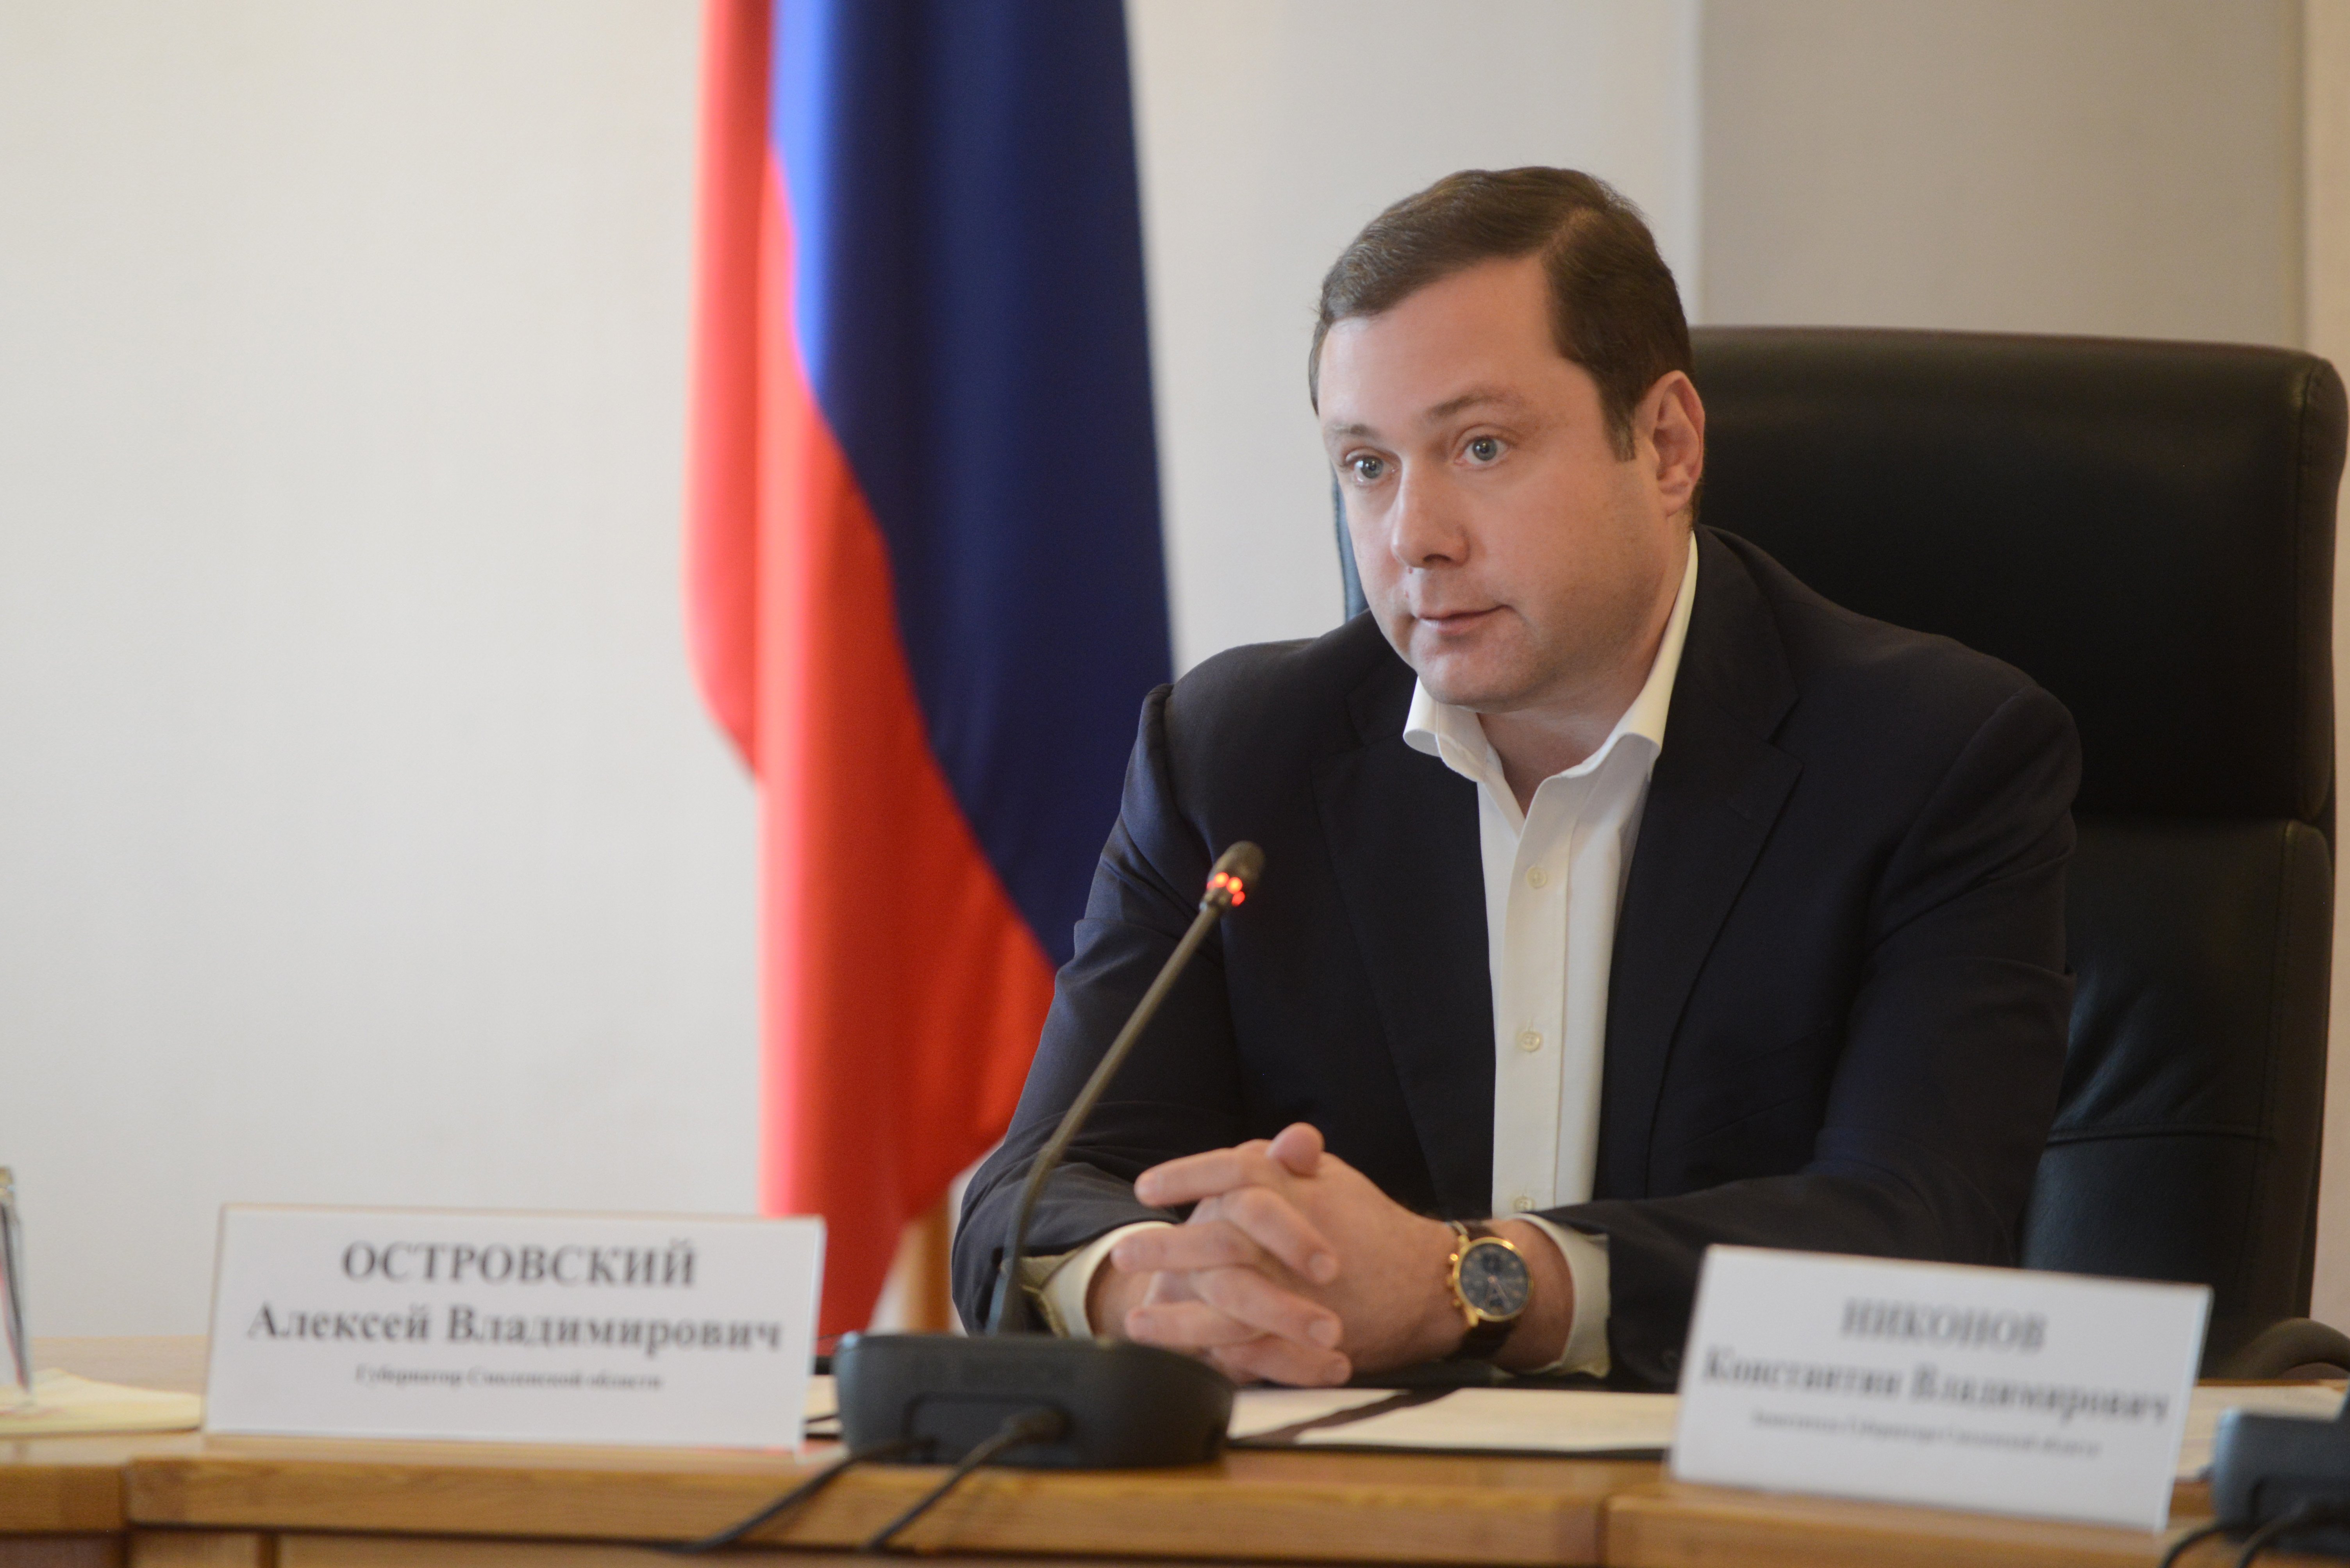 Алексей Островский сохранил позиции в рейтинге глав российских регионов